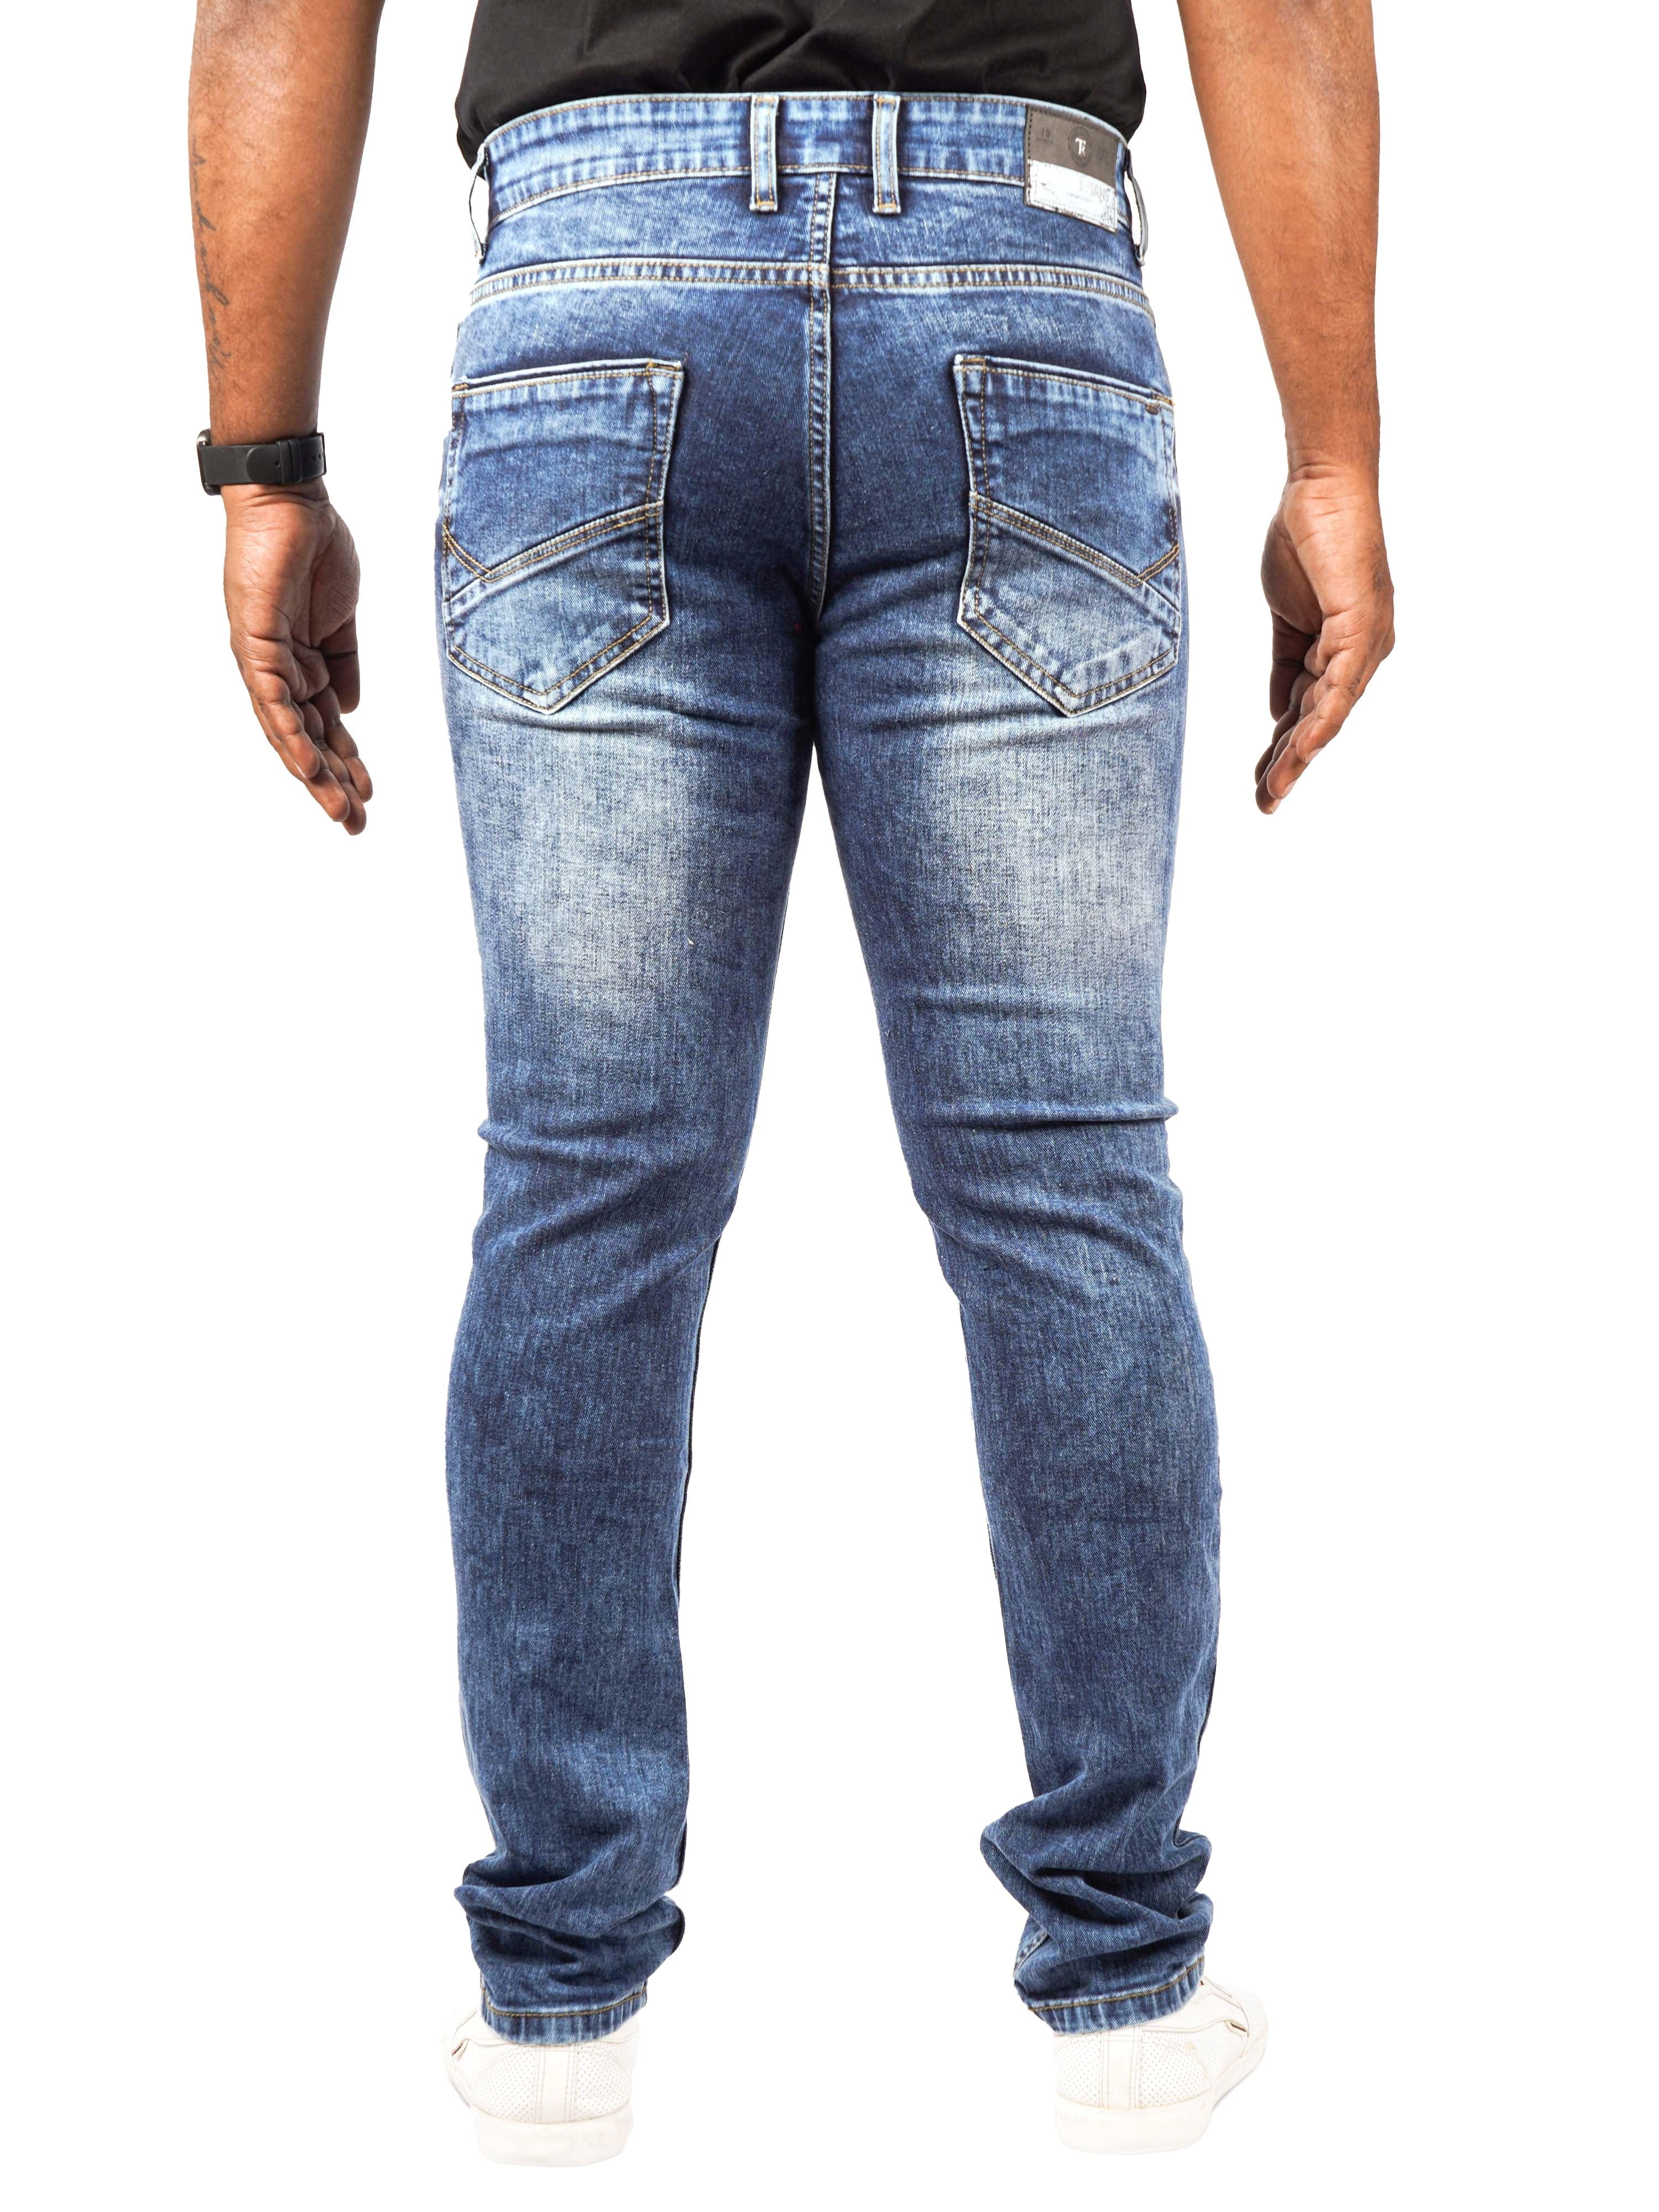 Men Slim-Fit Blue Jeans - Triggerjeans